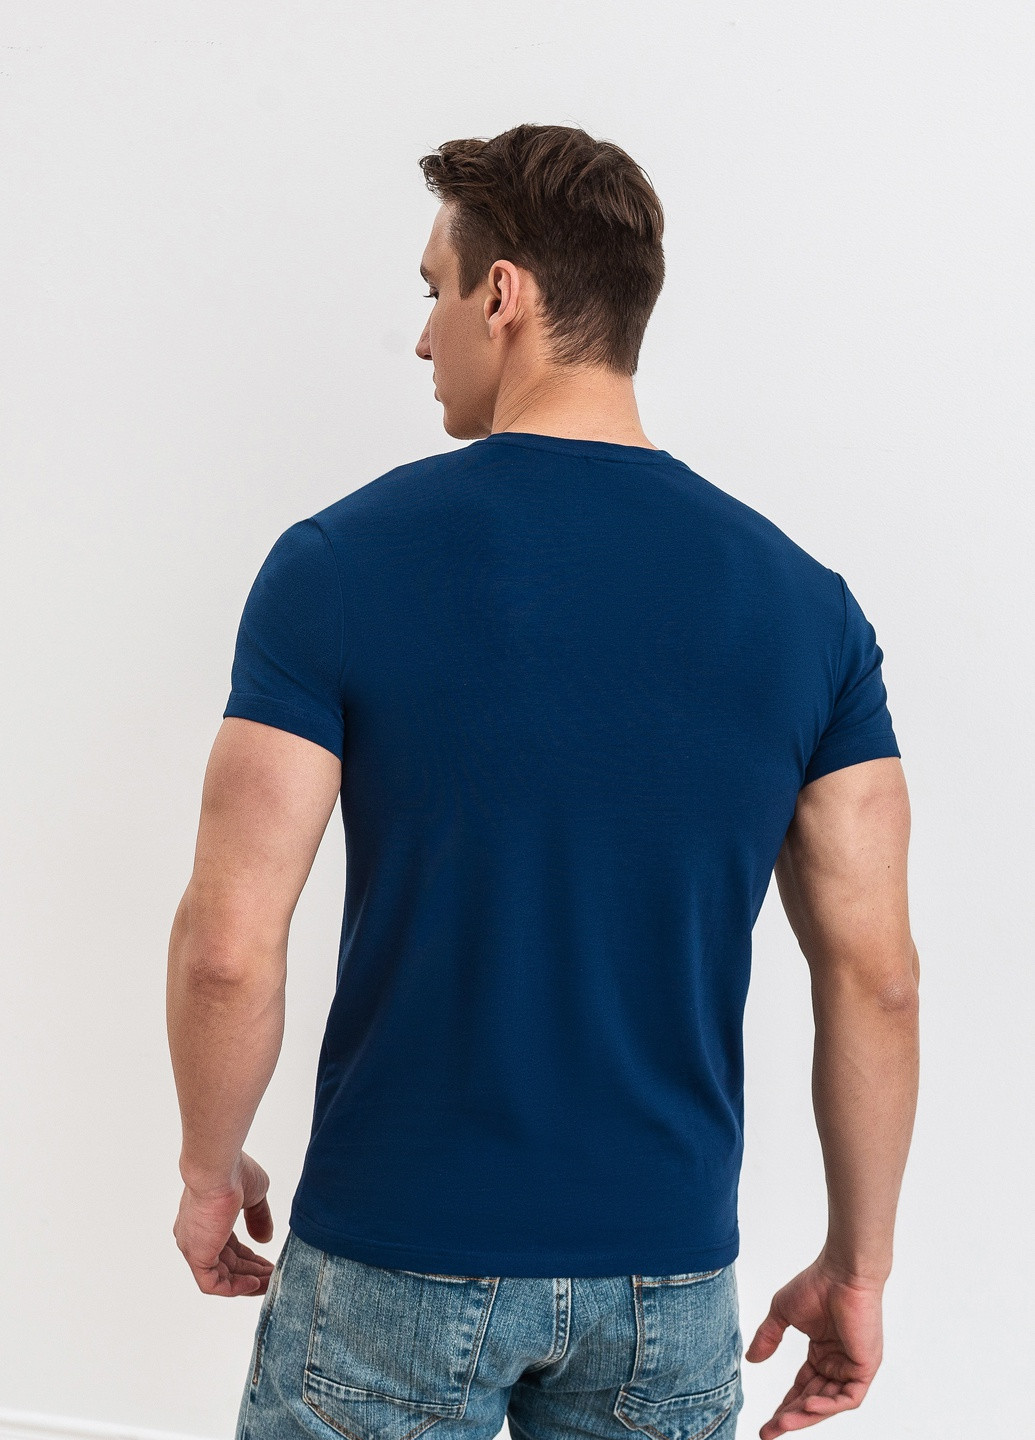 Синя футболка чоловіча базова з коротким рукавом German Volf